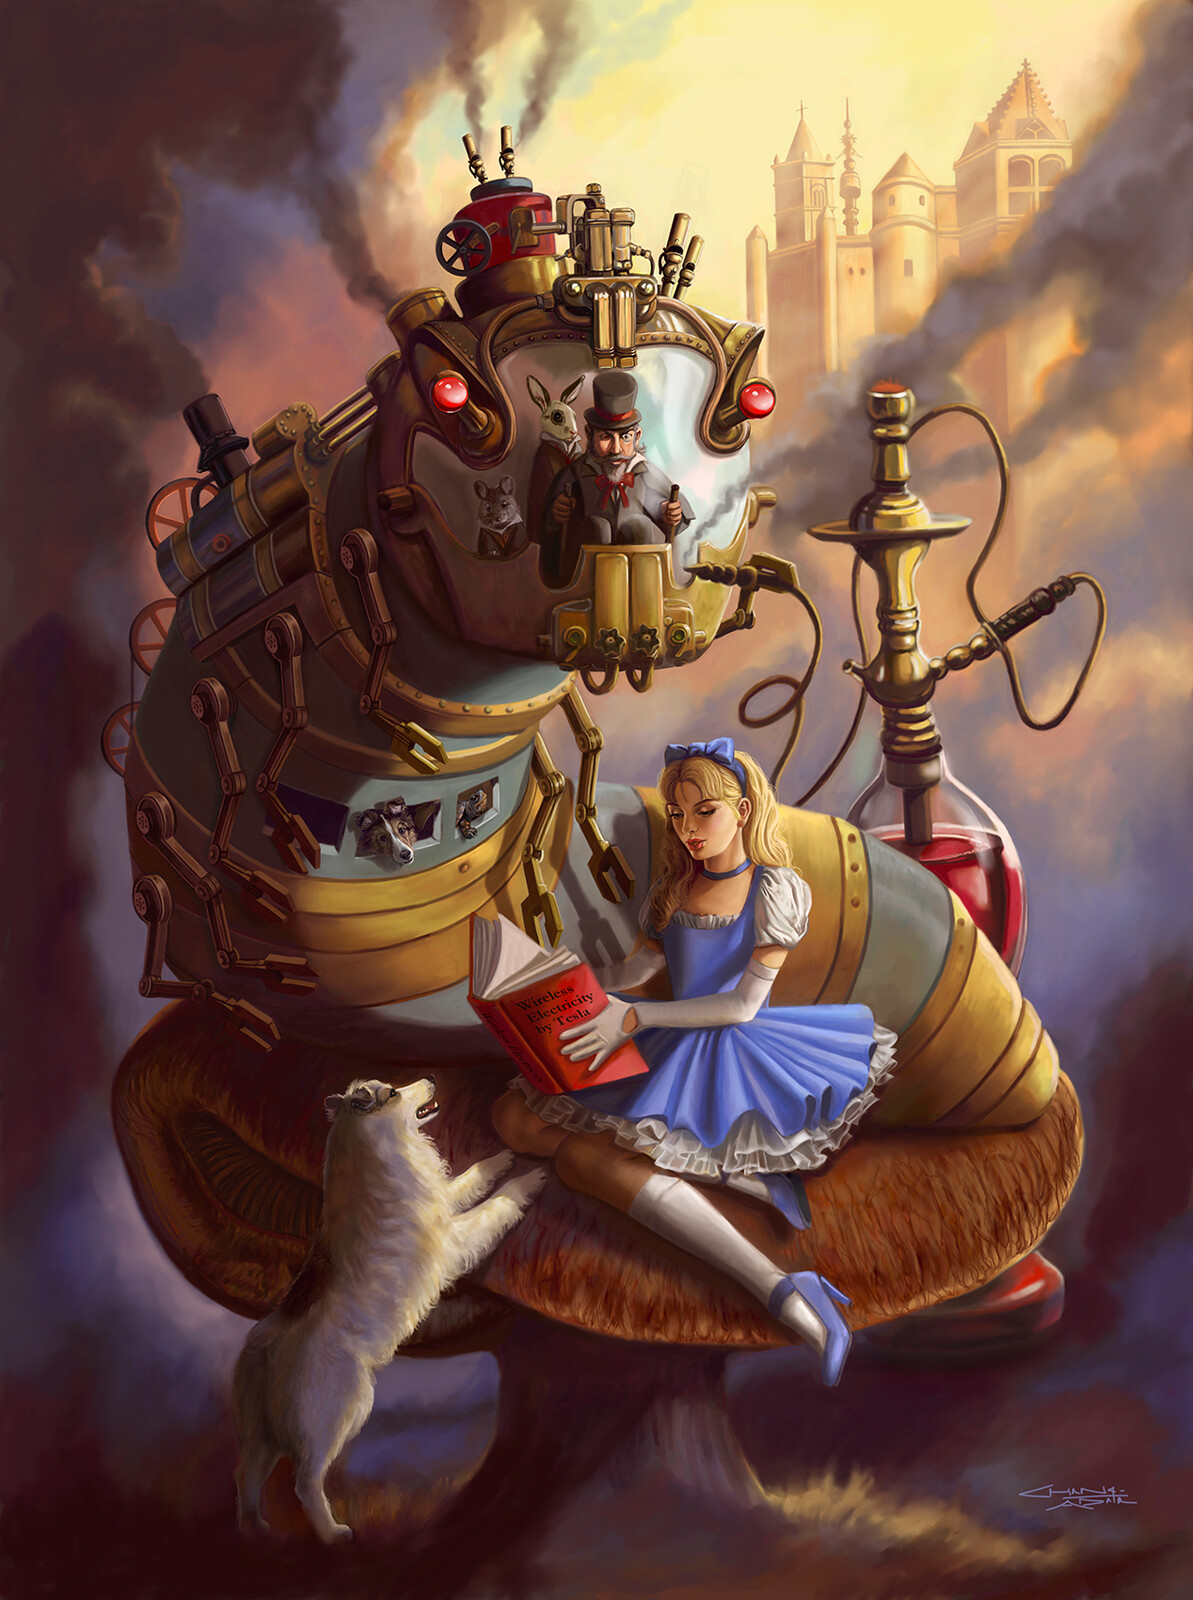 Steampunk Alice in Wonderland